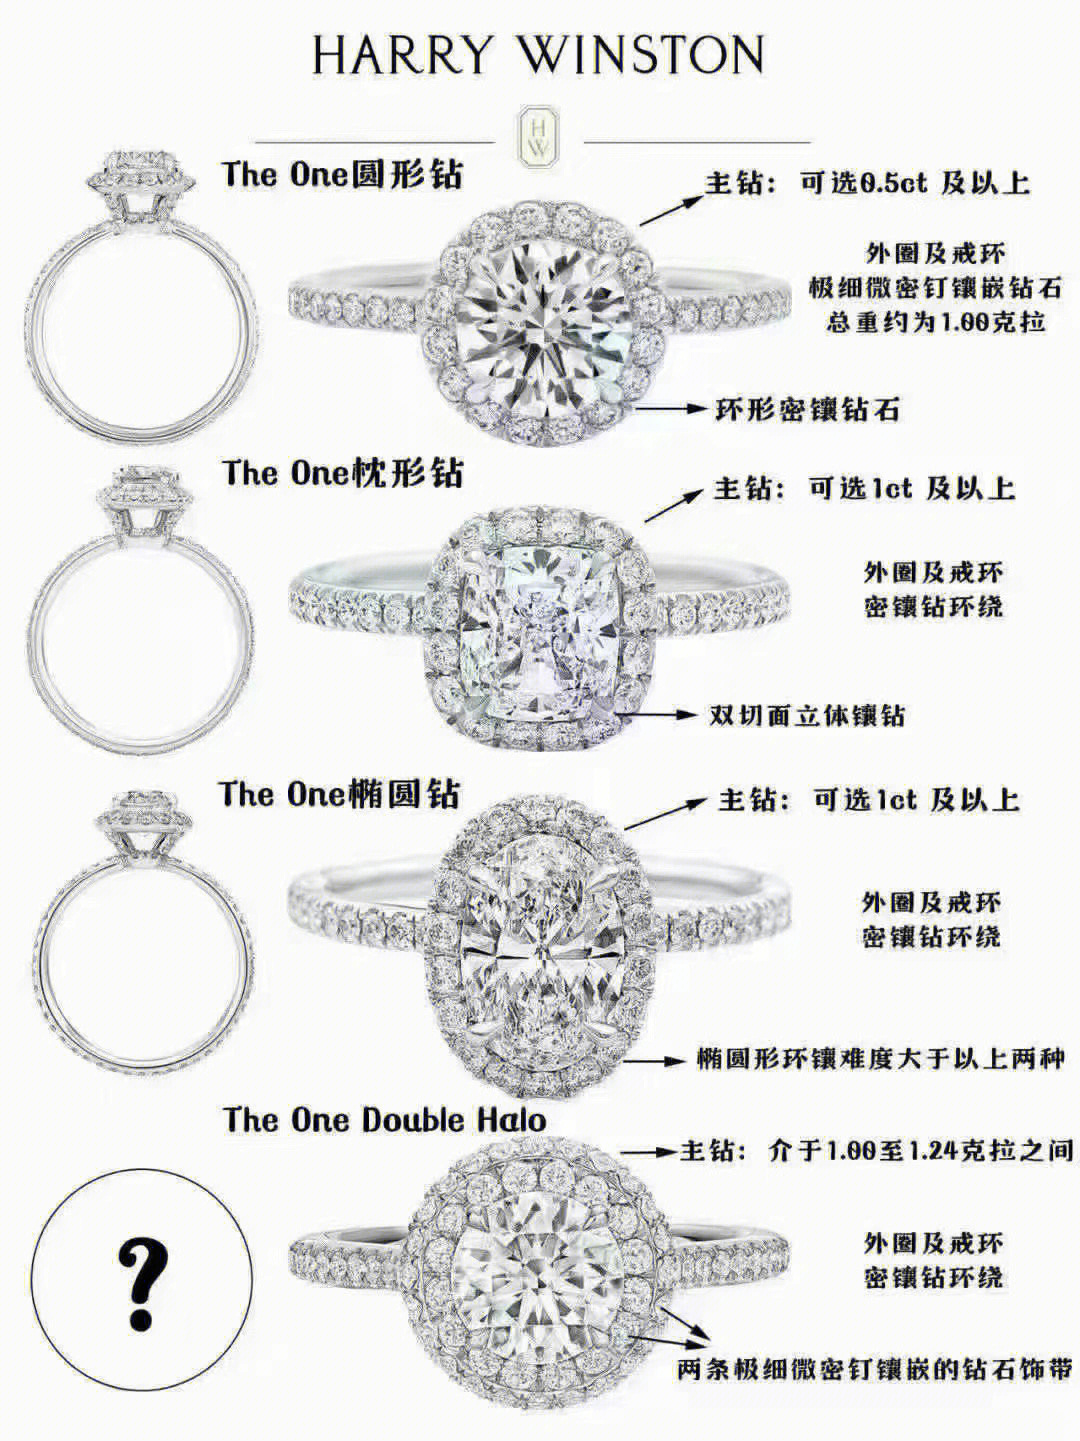 钻戒定制流程:1,选好你想要的钻石级别(或是预算)2,挑选你喜欢的款式